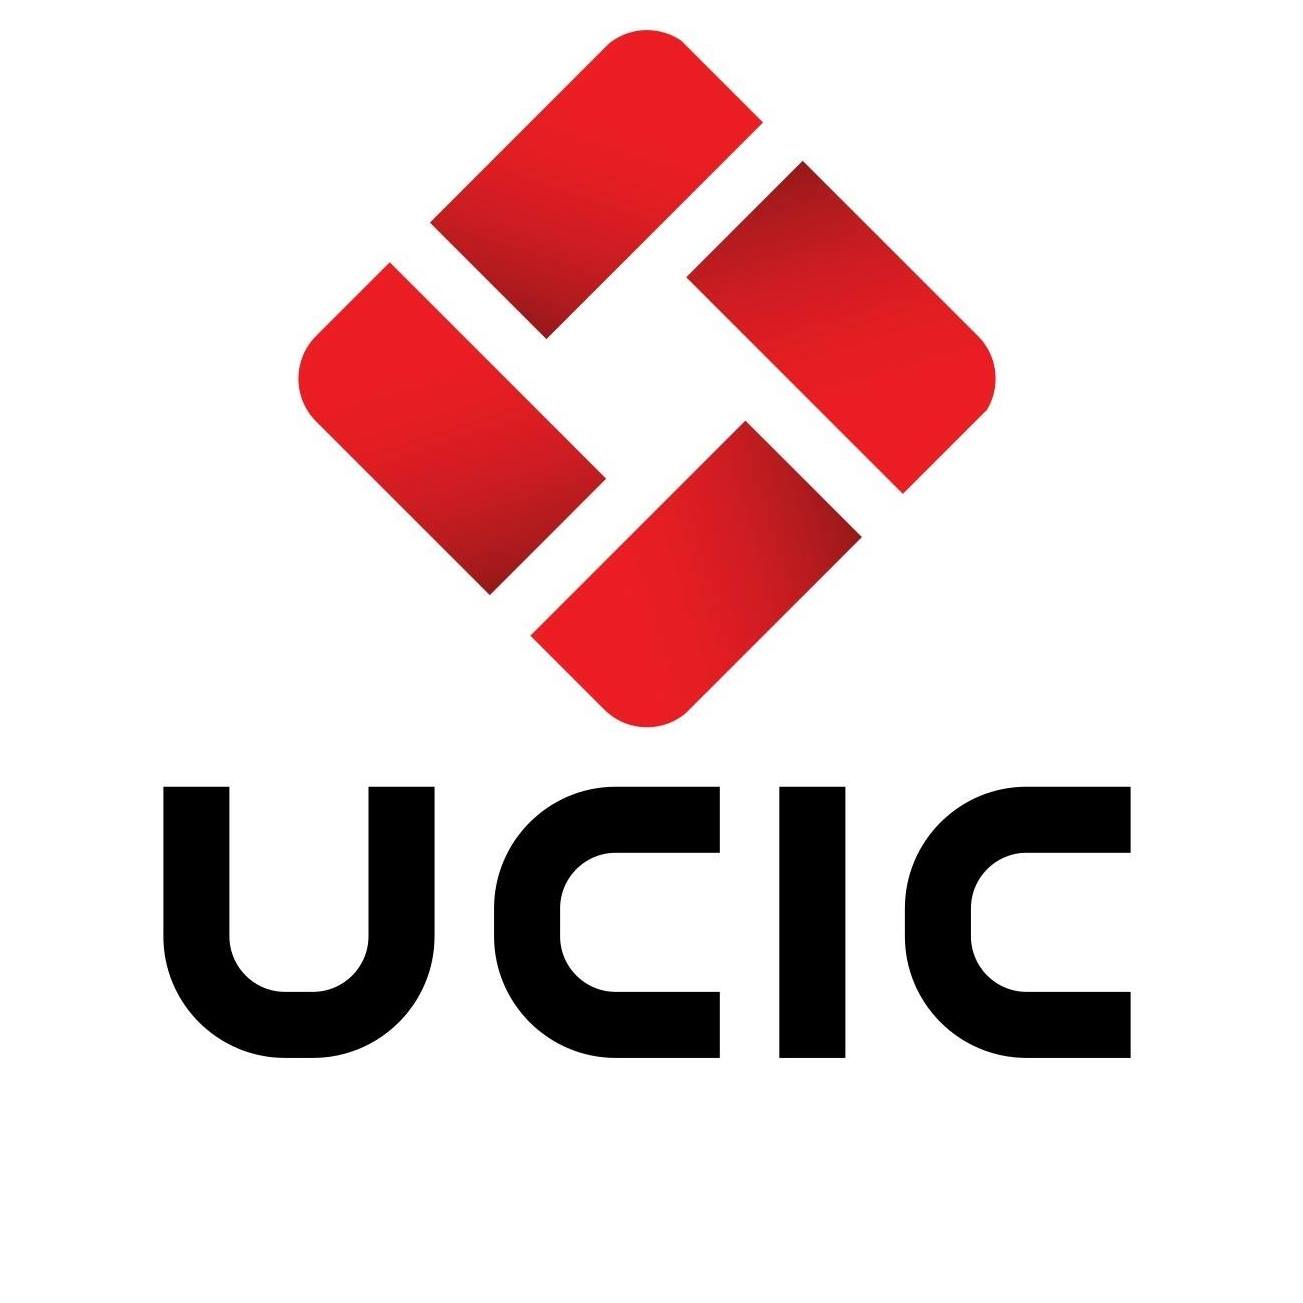 قامت الشركة المتحدة لصناعات الكرتون (UCIC) بالإعلان عن توفير وظائف فنية شاغرة في محافظة جدة، وهذا وفقًا للتفاصيل الموجودة بالأسفل.